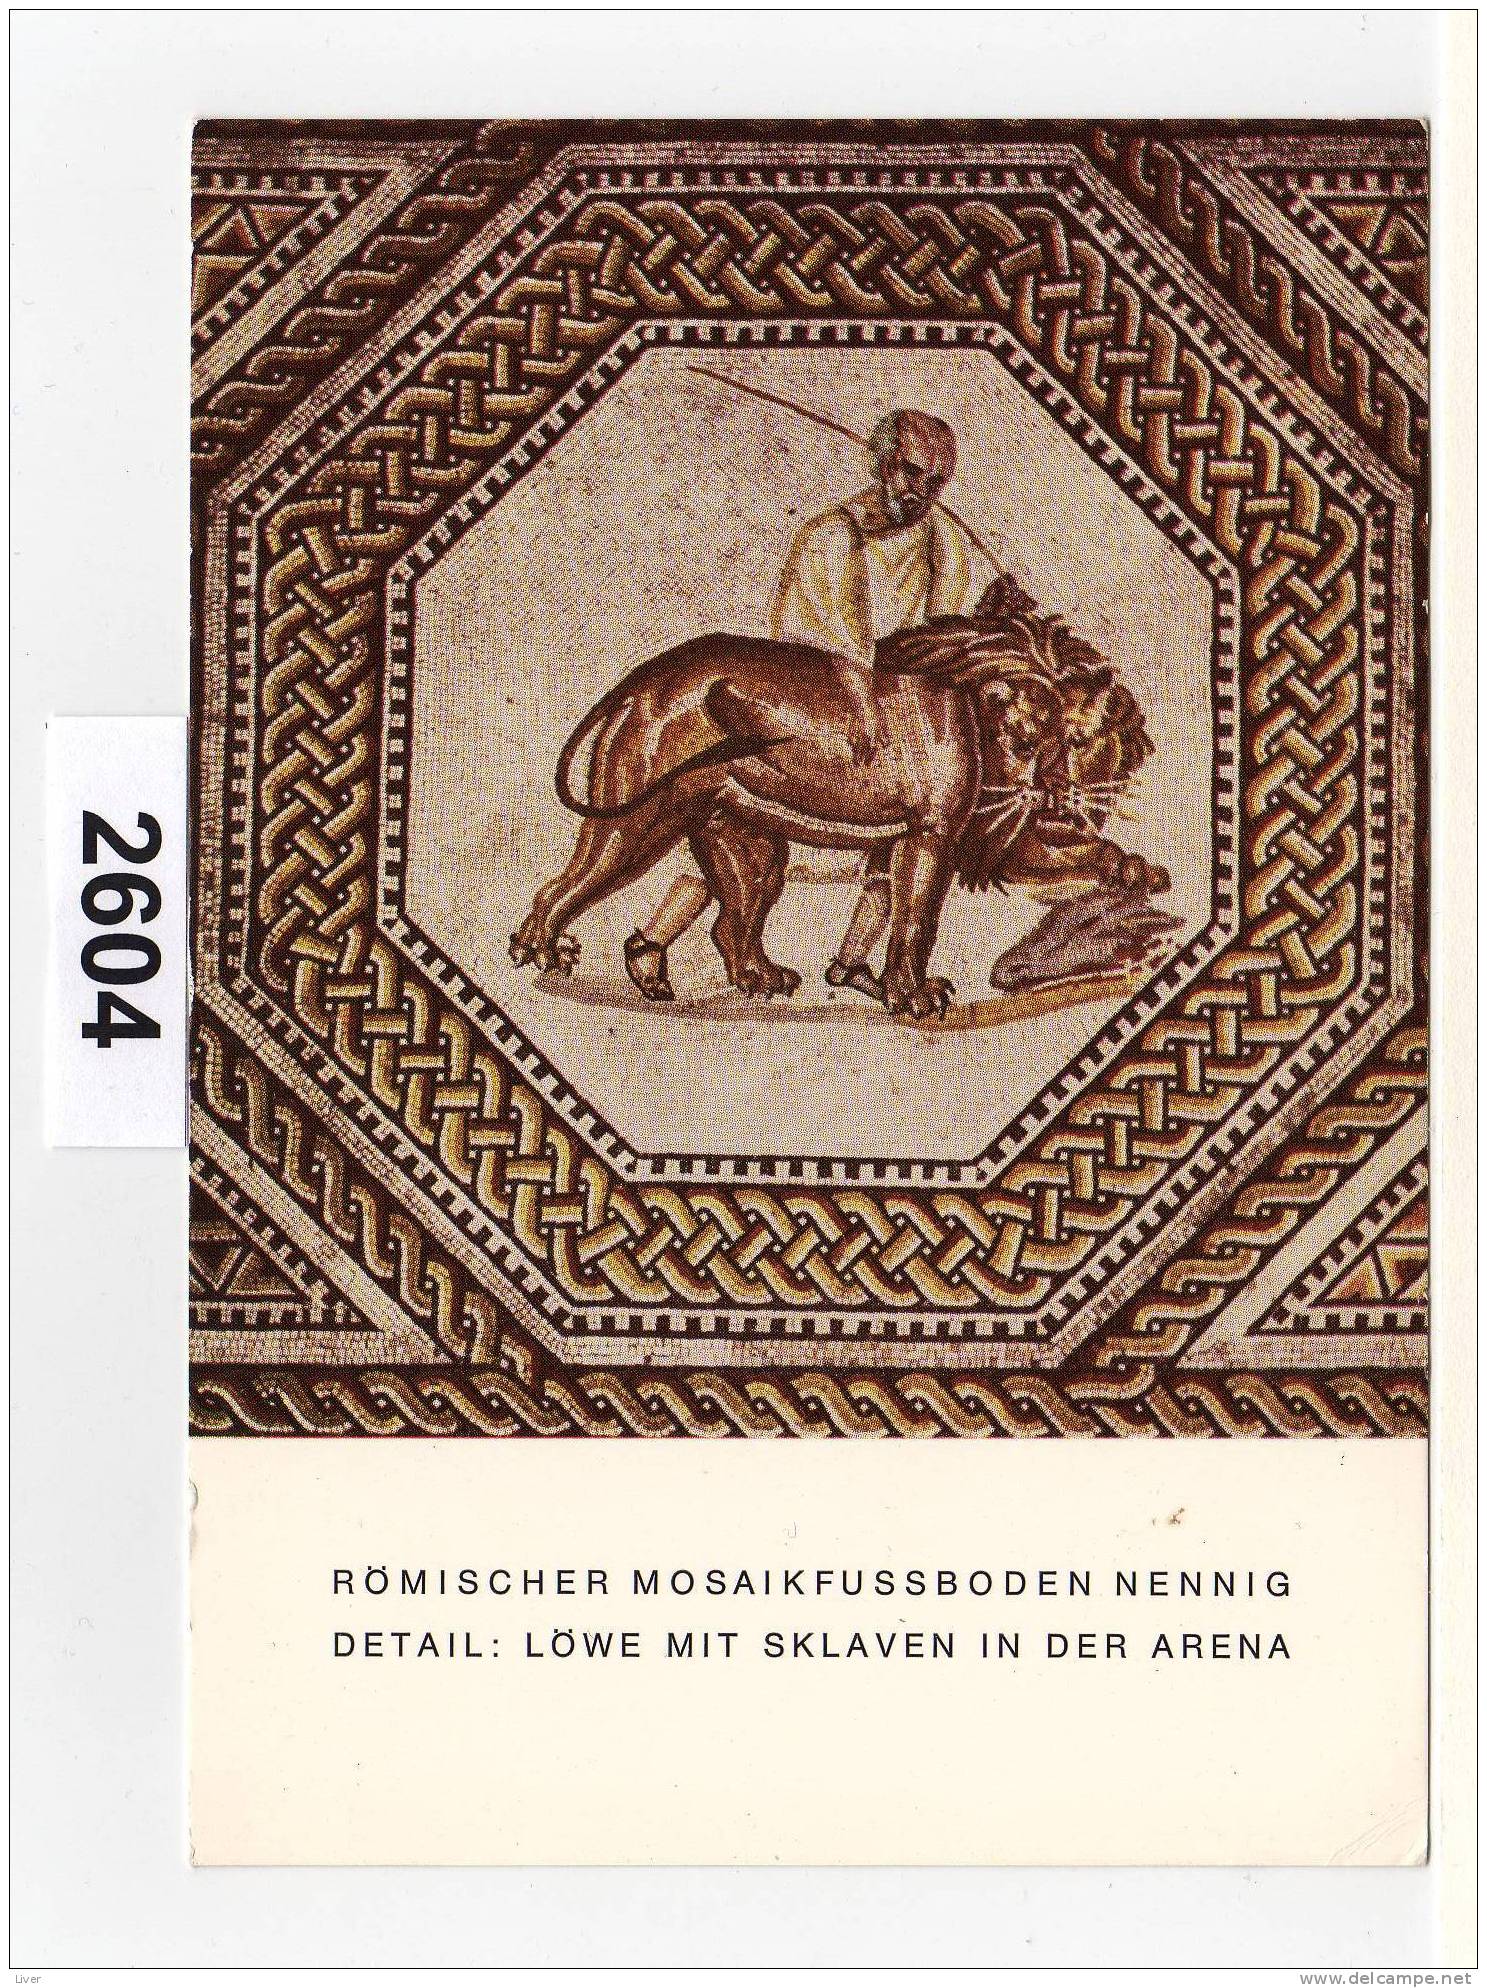 Romischer Mosaikfussbodennennig - Kreis Merzig-Wadern